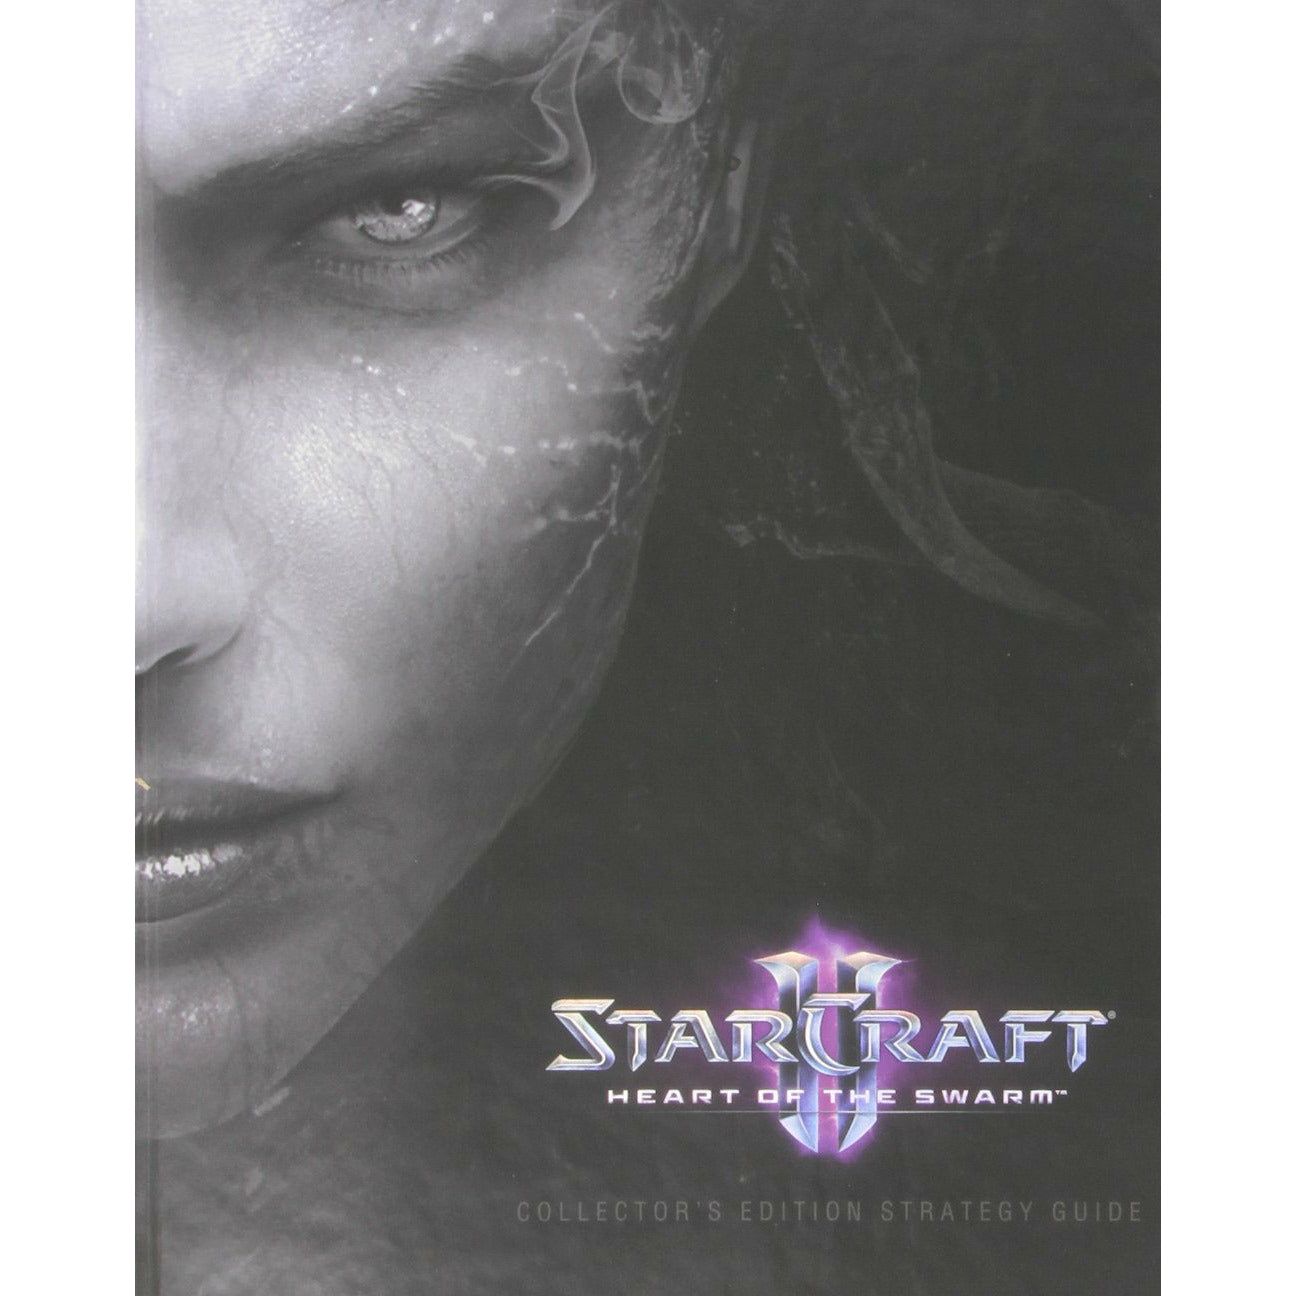 Guide stratégique de l'édition collector de Starcraft II Heart of the Swarm - Brady